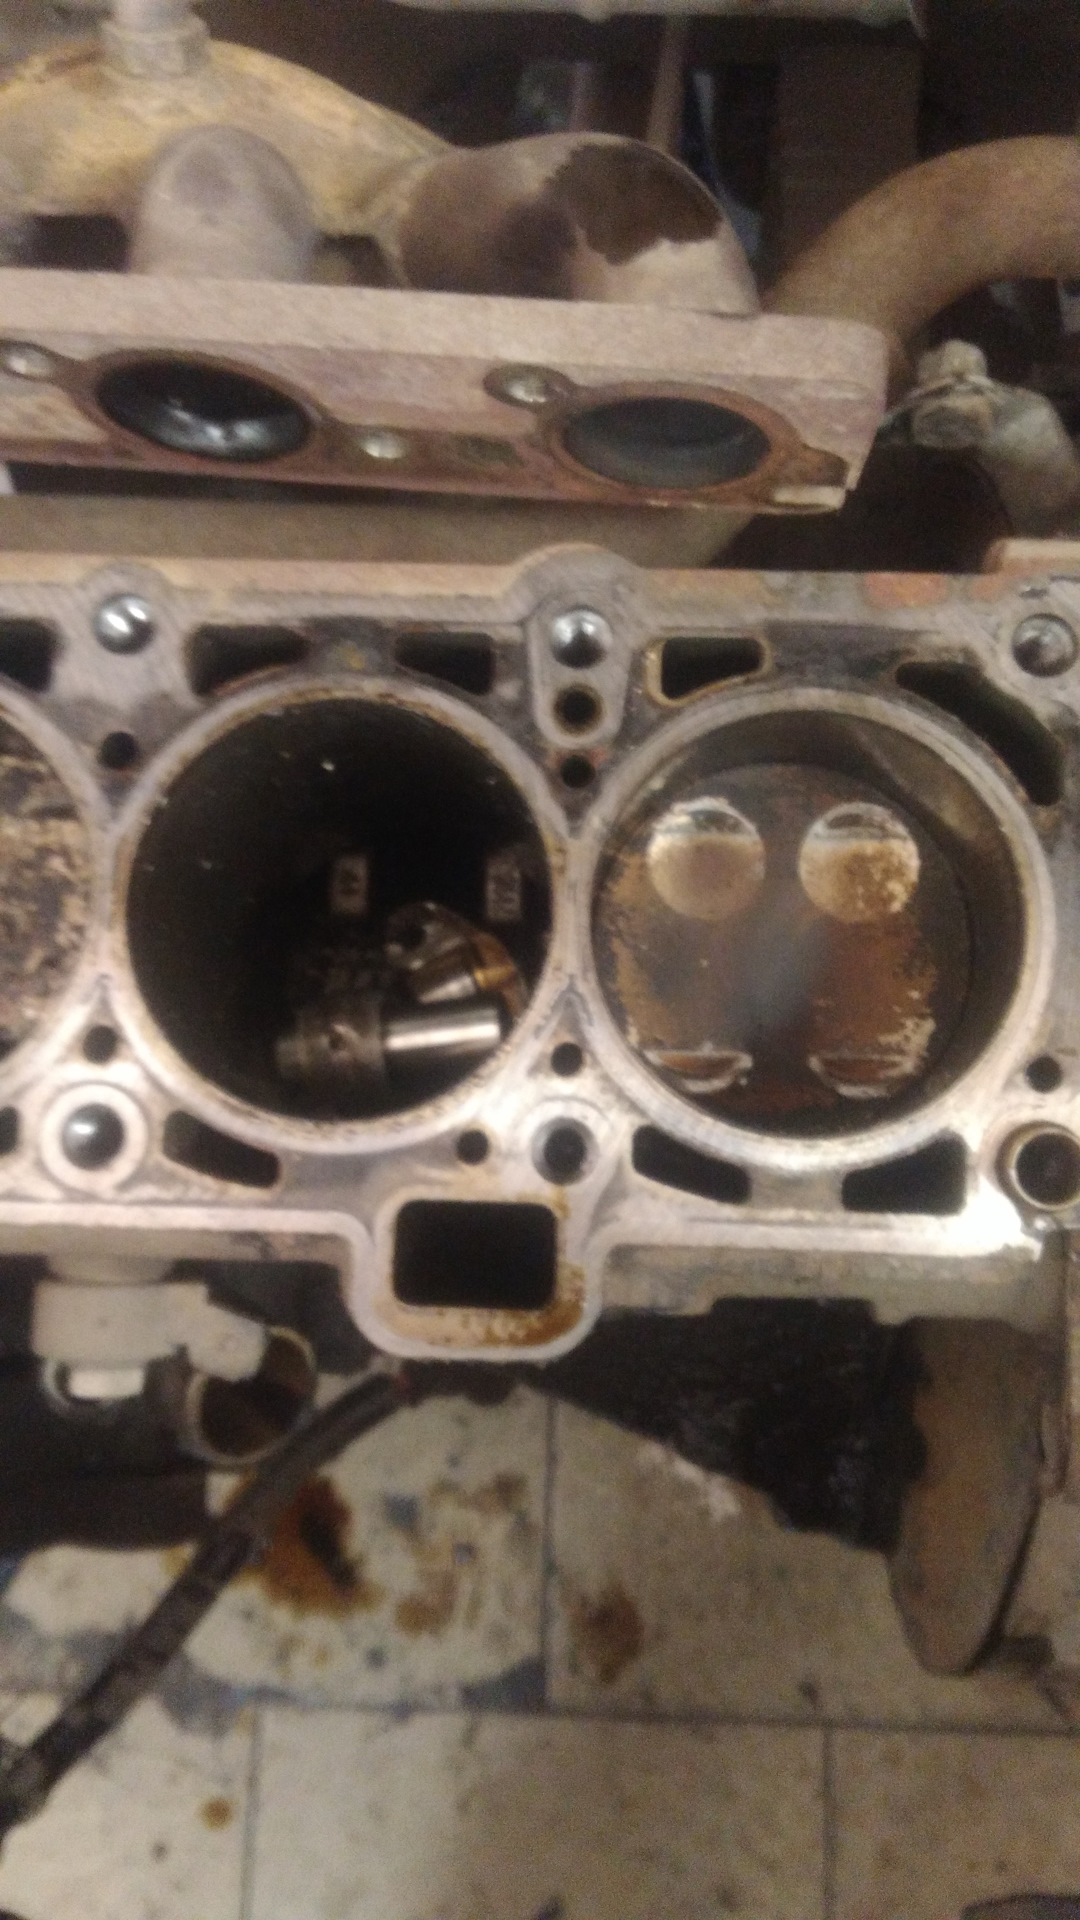 Гранта 16 клапанов гнет ли клапана. Двигатель Гранта 8 клапанов 11186 гнет ли клапана. Погнуло клапана Гранта 8 клапанная. Загнуло клапана Приора 16 клапанов. Погнуло клапана Гранта 8 клап.